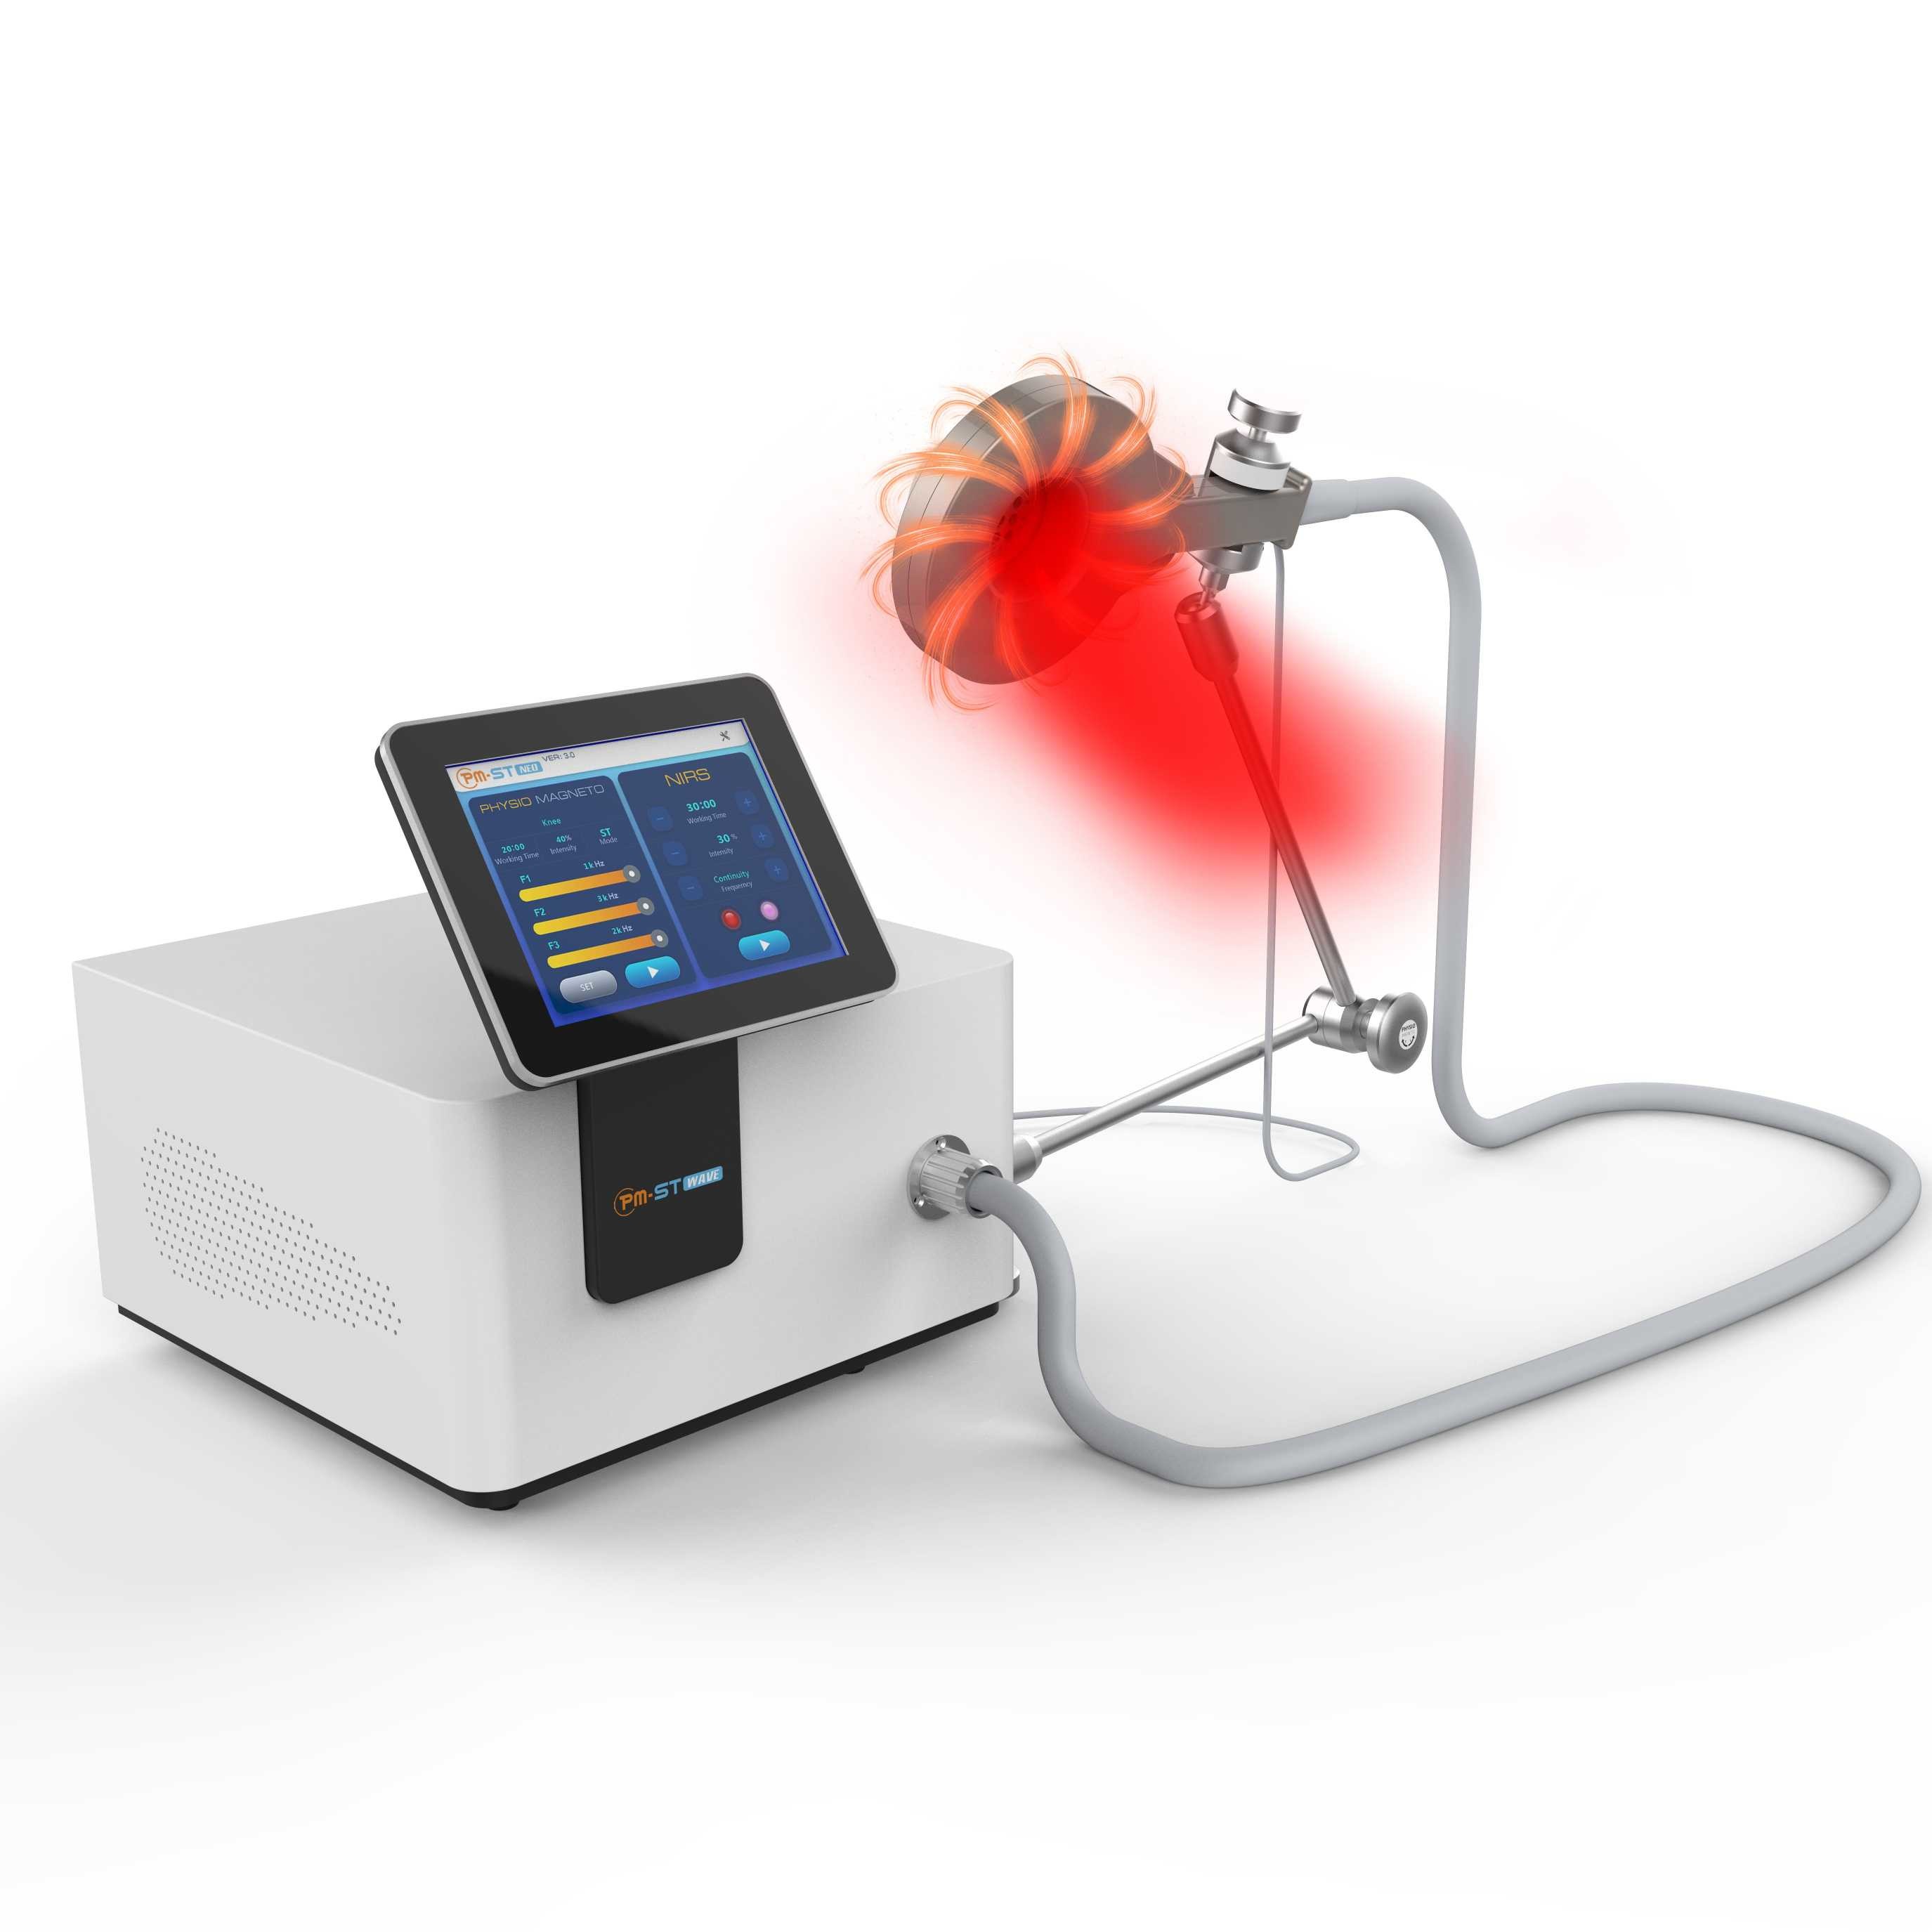 Physio машина терапией магнето 130khz около холодных приборов физиотерапии красного света для кислорода крови